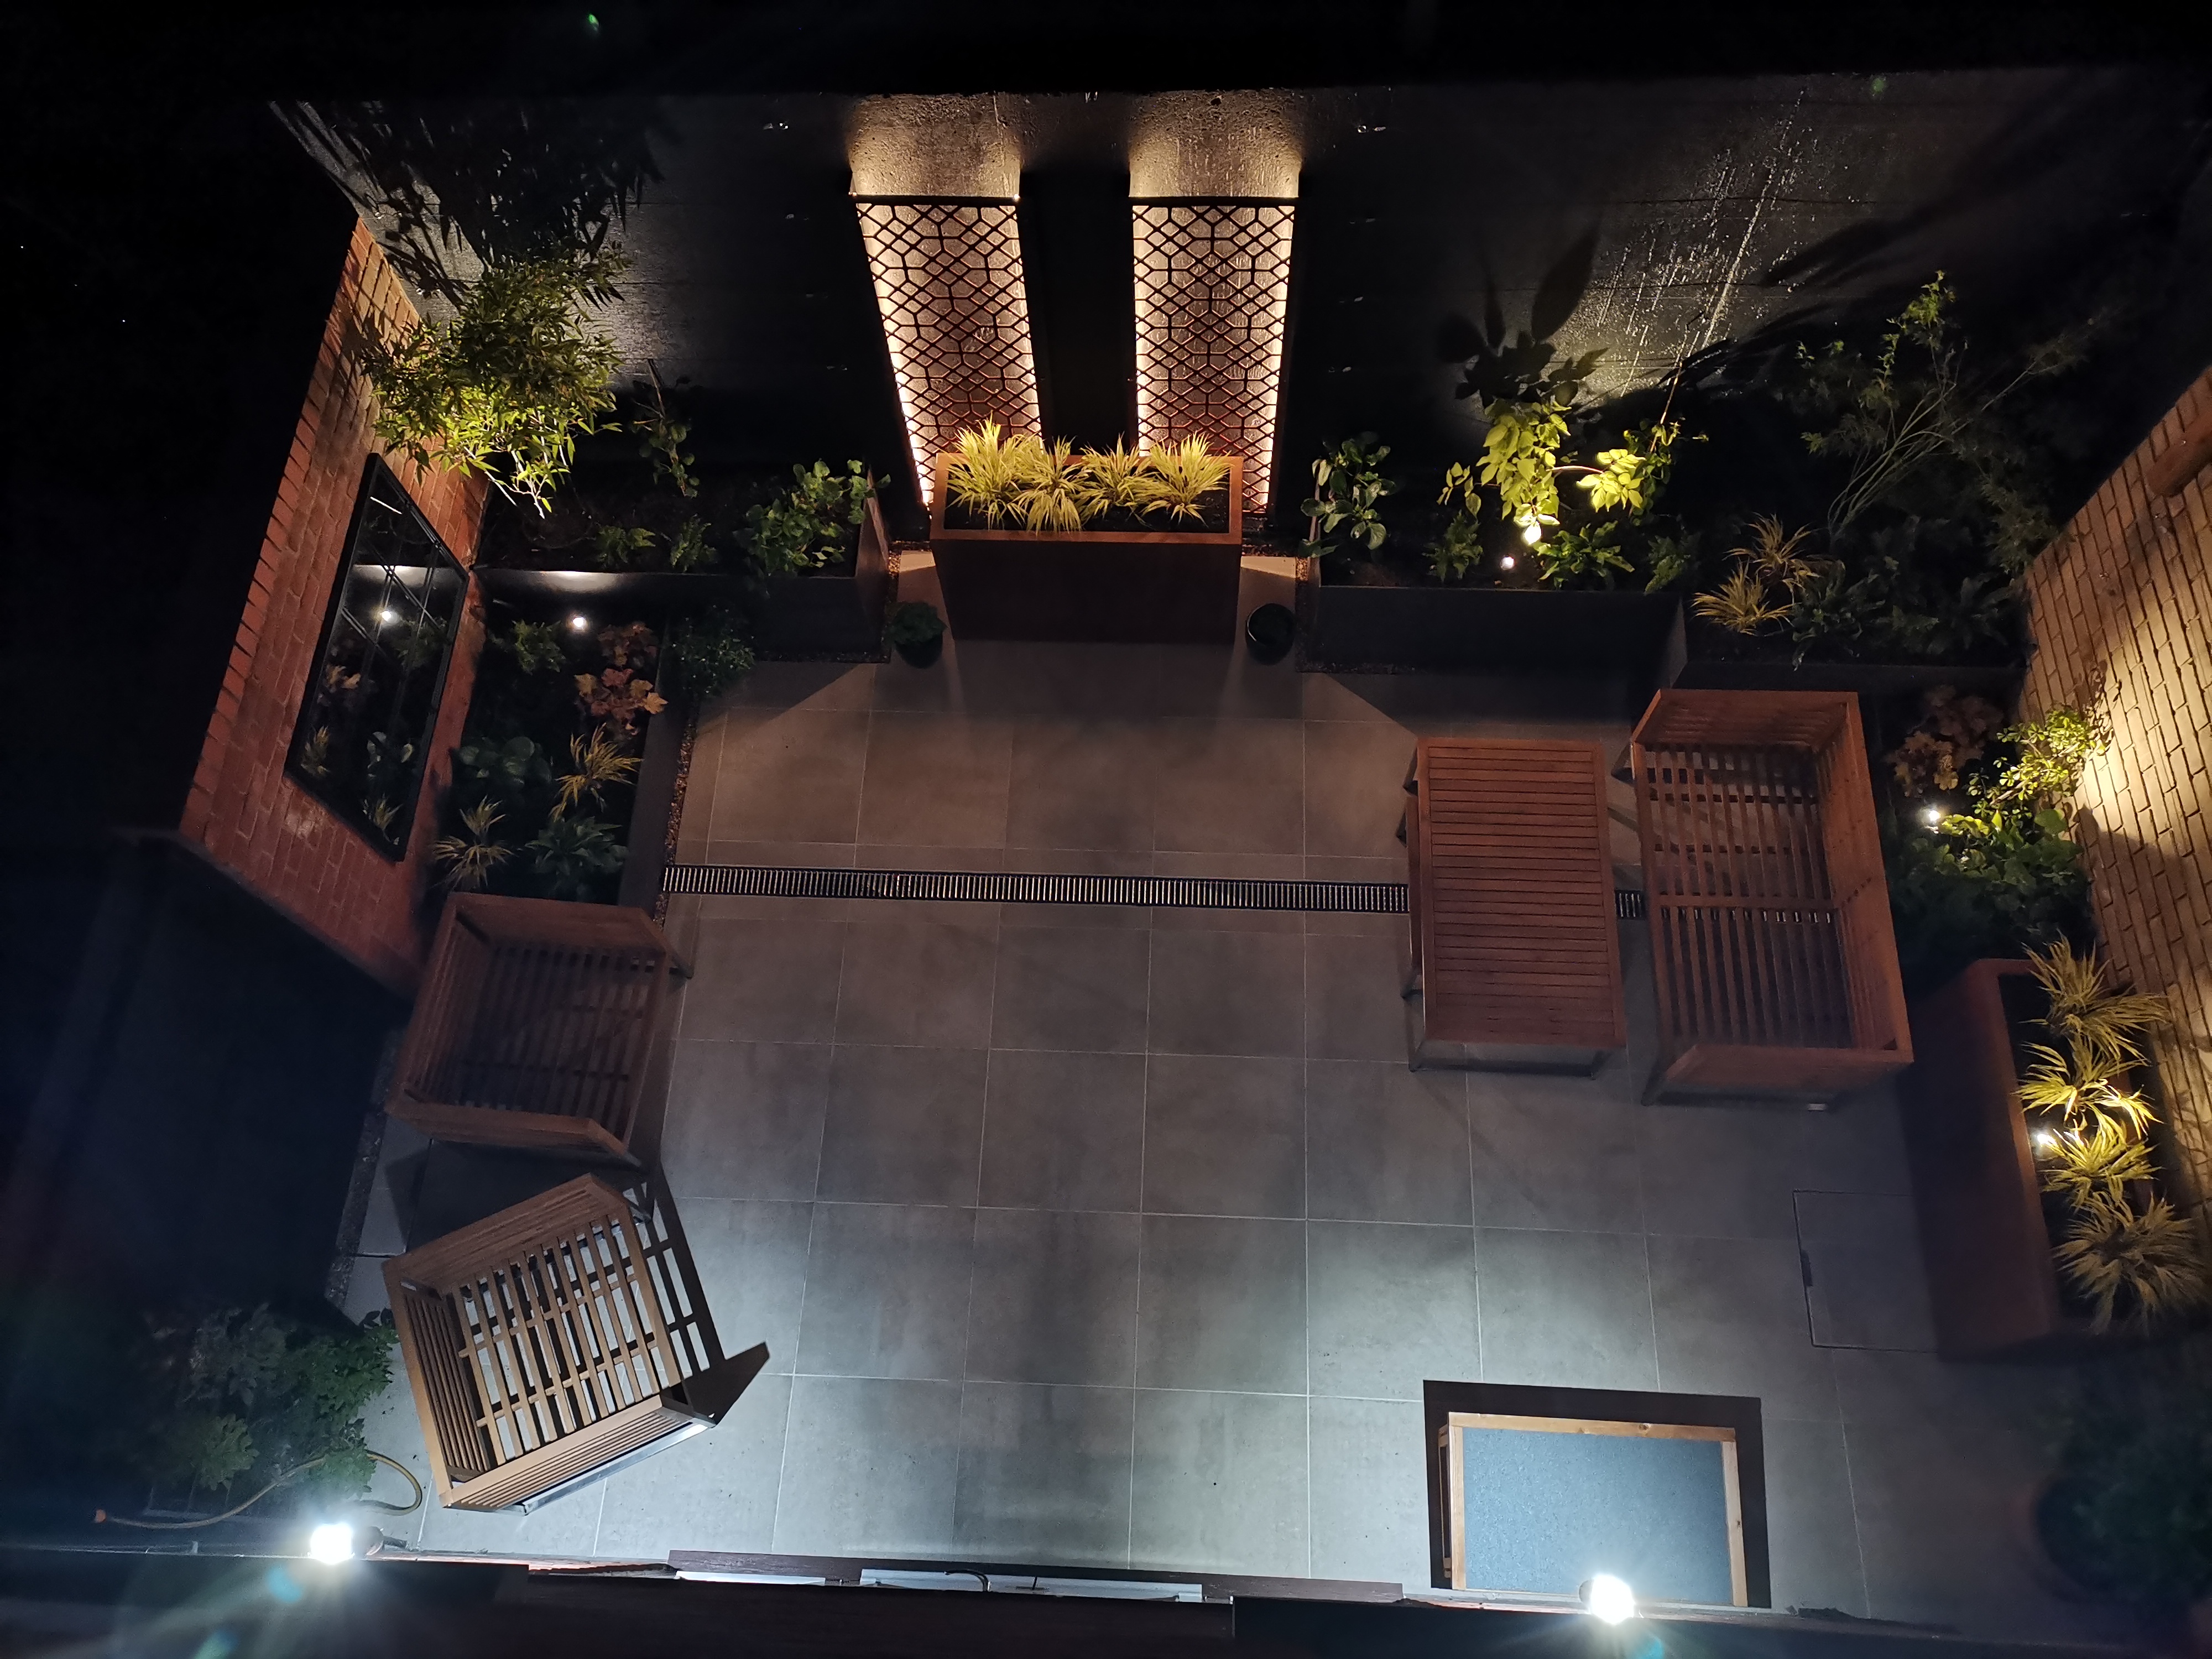 Courtyard garden at night